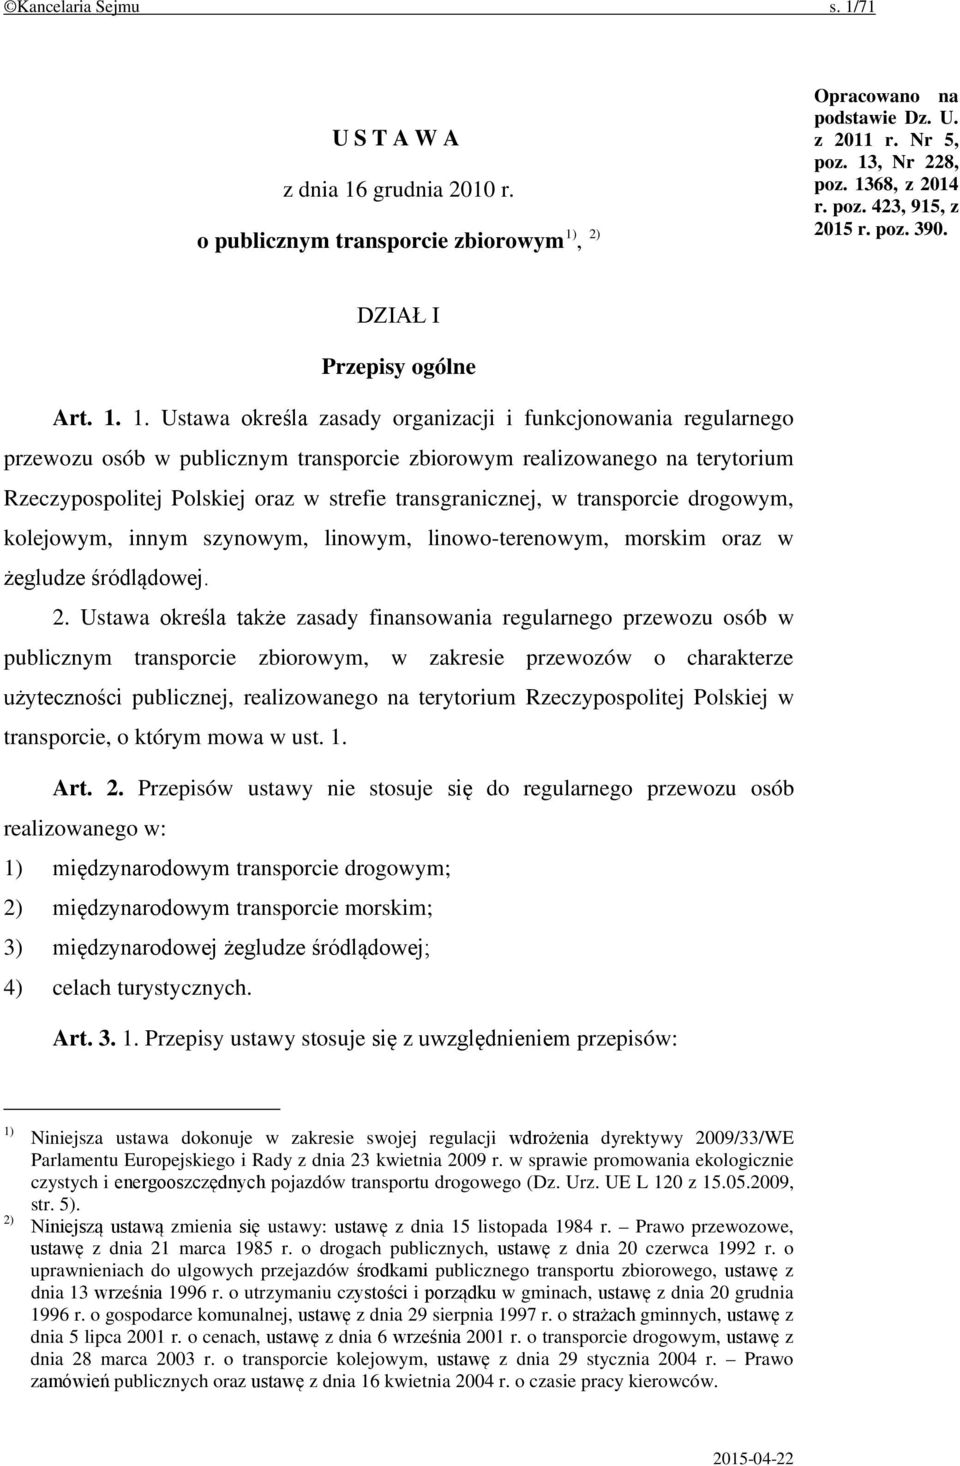 1. Ustawa określa zasady organizacji i funkcjonowania regularnego przewozu osób w publicznym transporcie zbiorowym realizowanego na terytorium Rzeczypospolitej Polskiej oraz w strefie